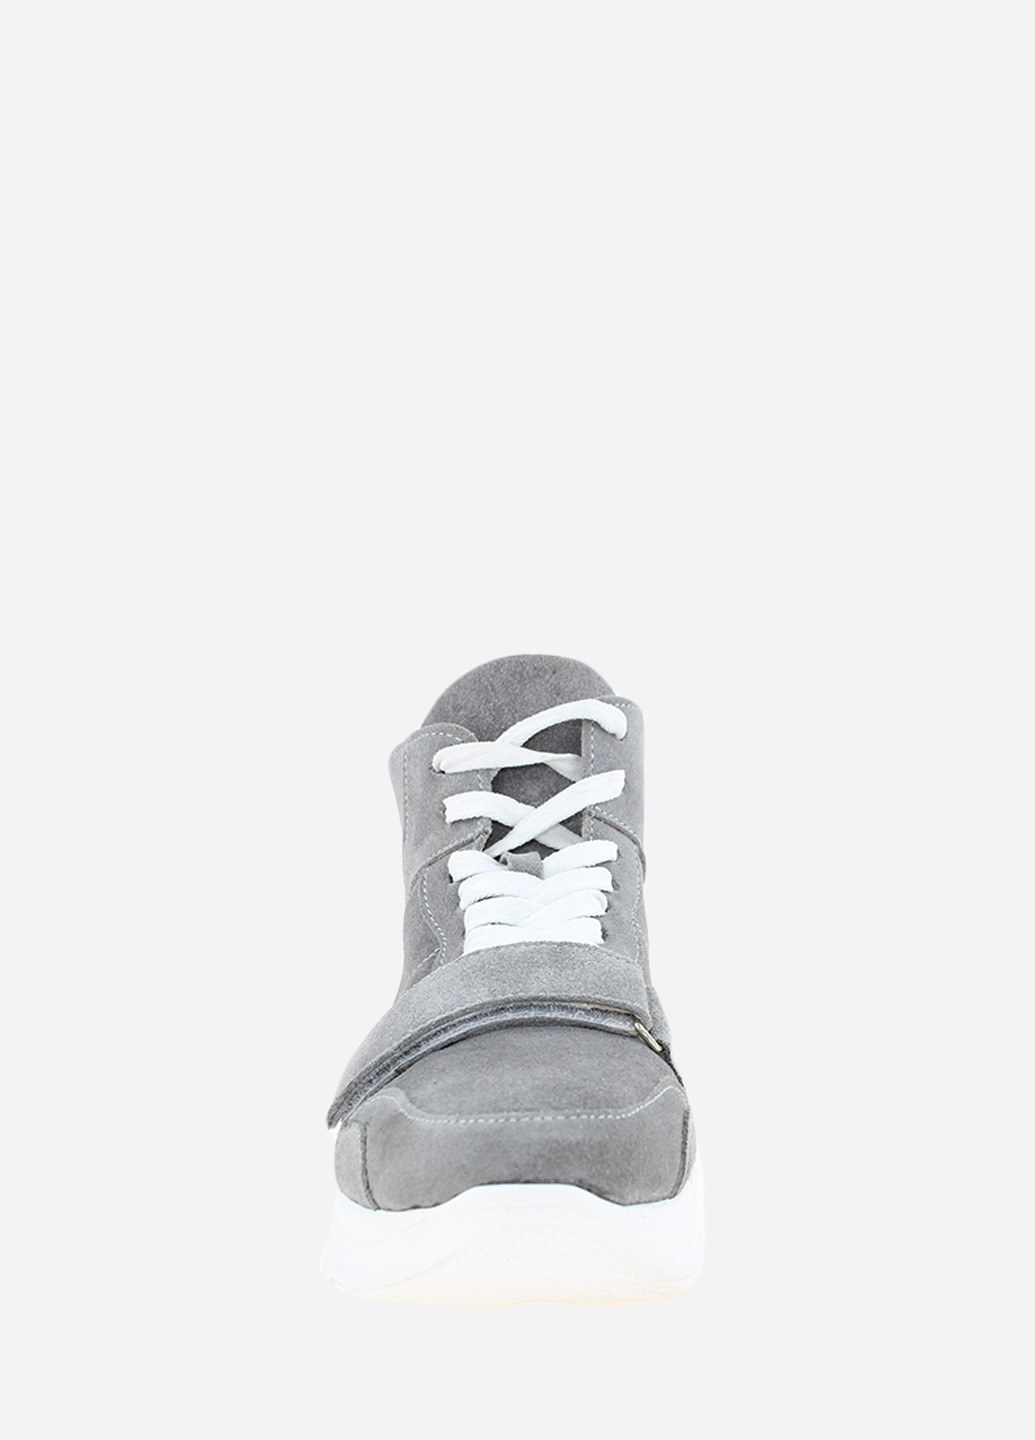 Осенние ботинки rhit2013-19-11 серый Hitcher из натуральной замши